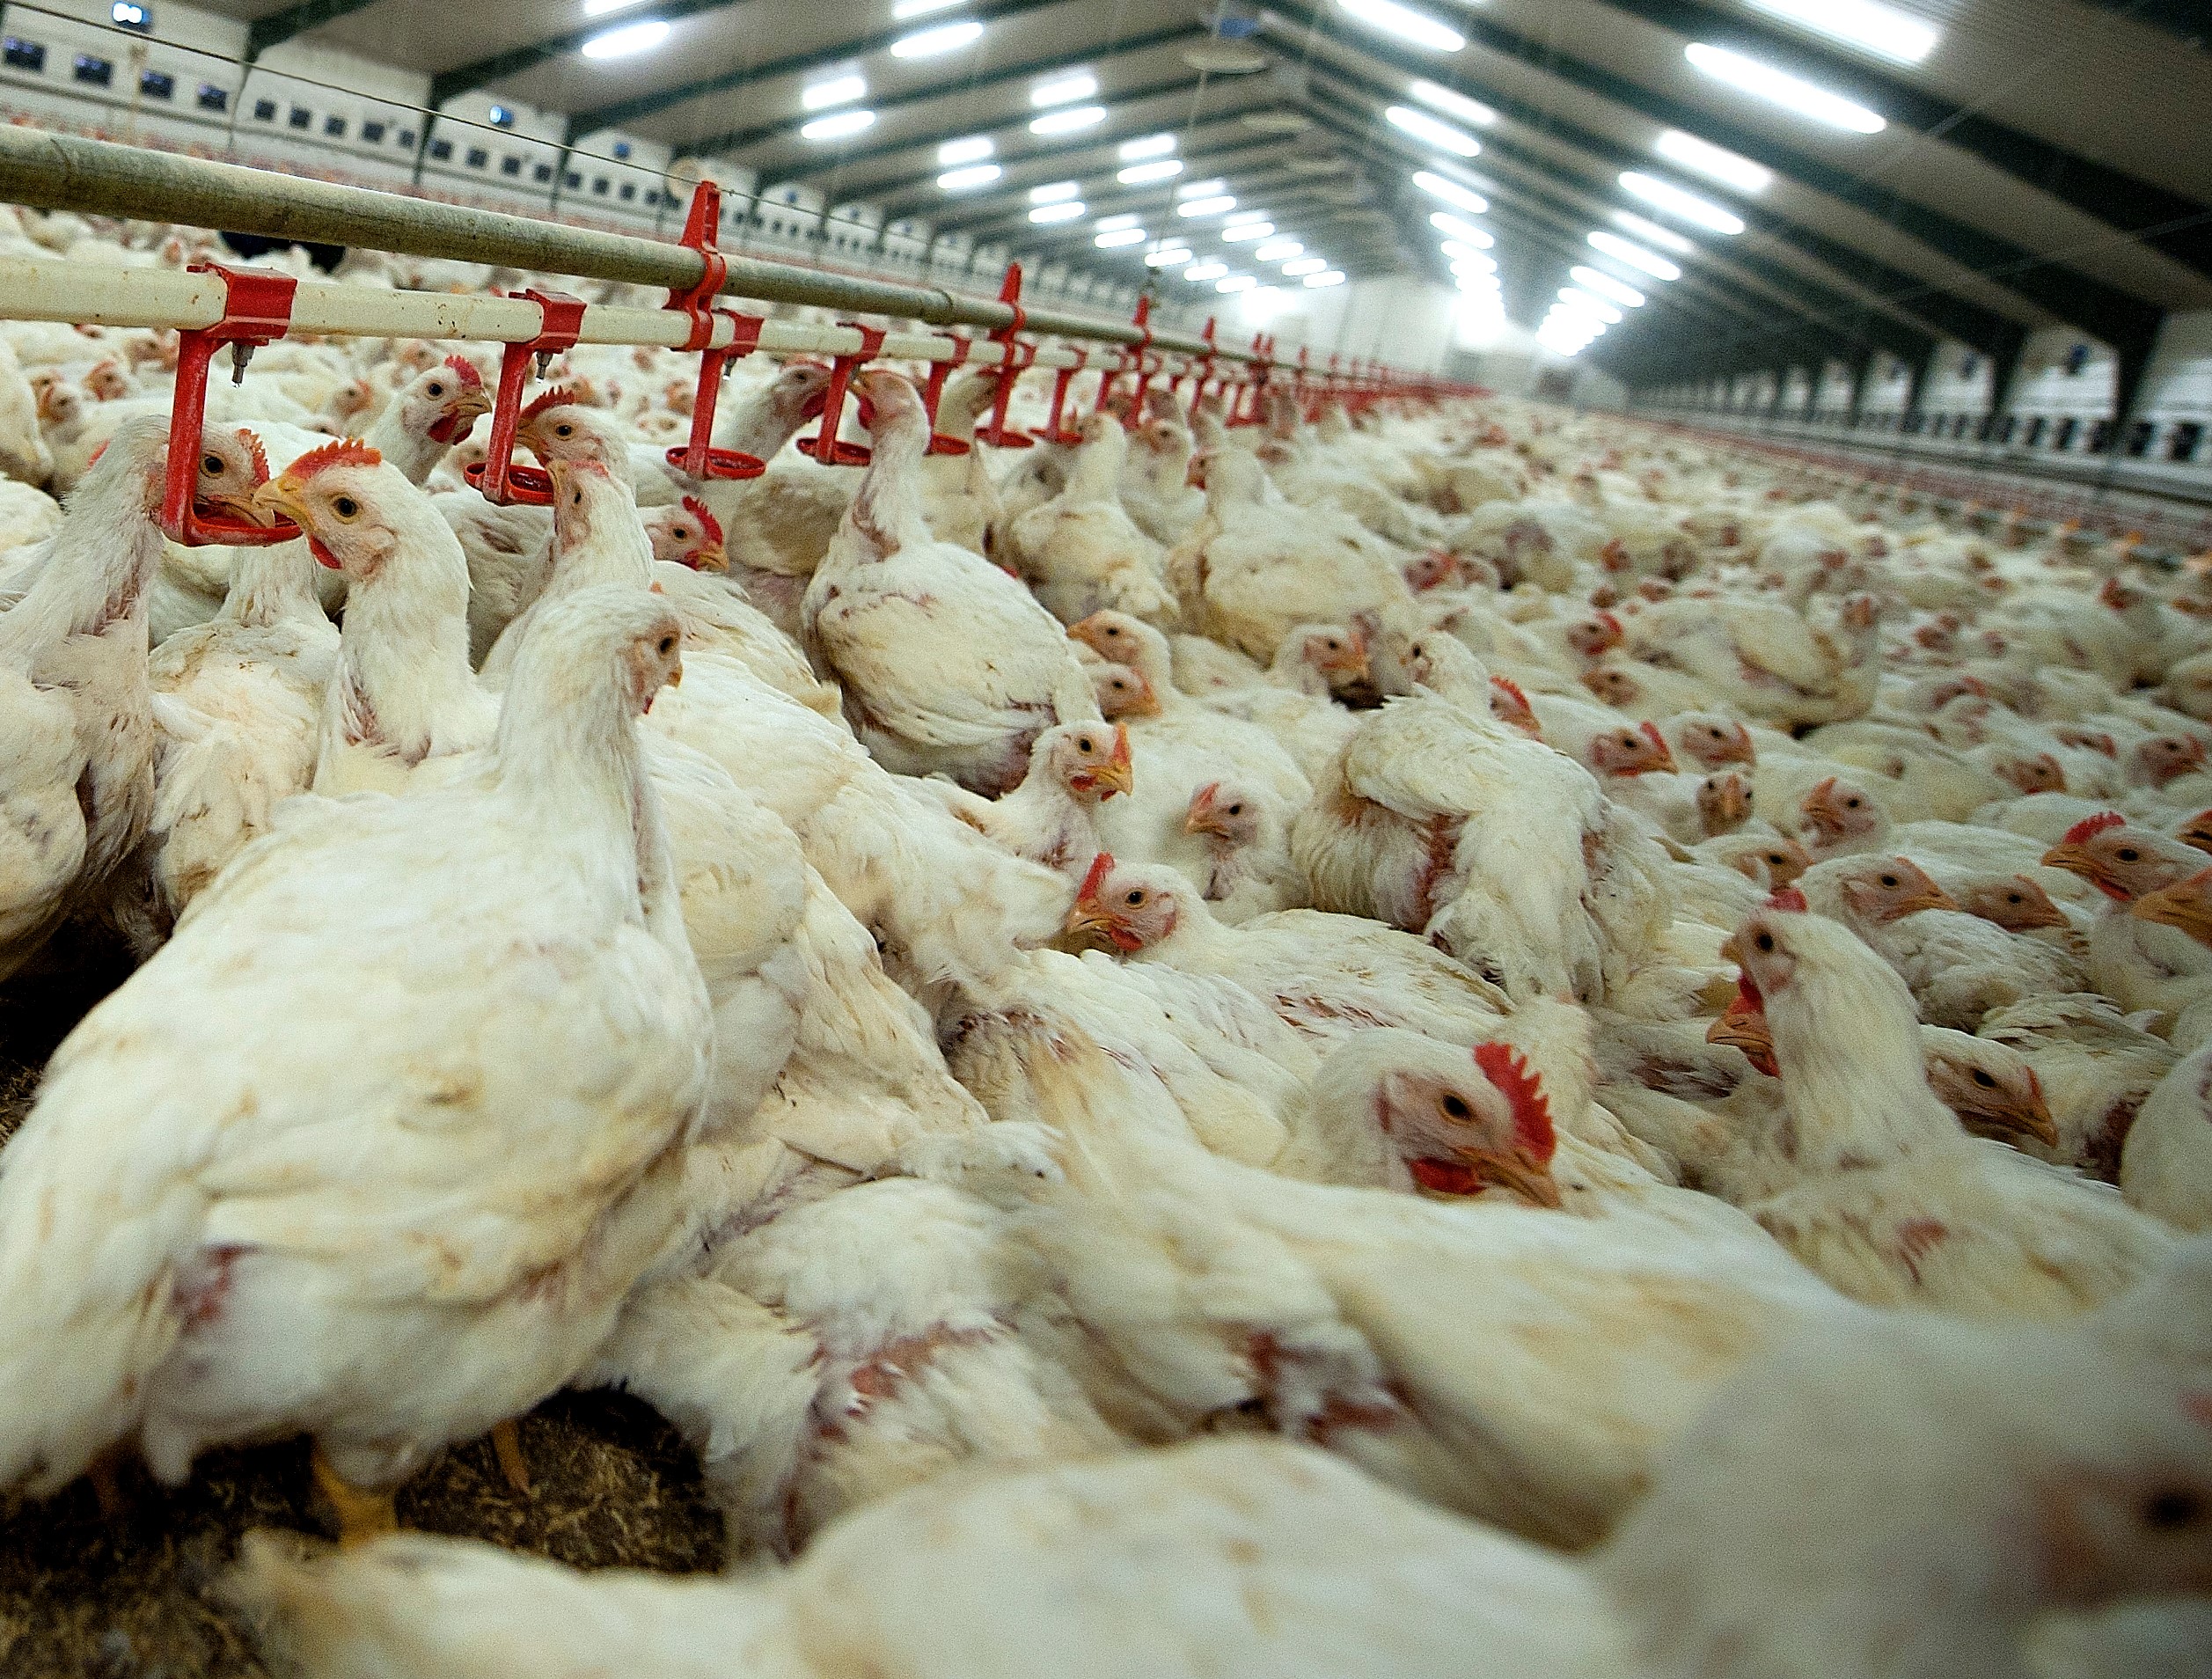 Turbokyllingen, Ross 308 samles i flokke af op til 50000 kyllinger pr. hal. 